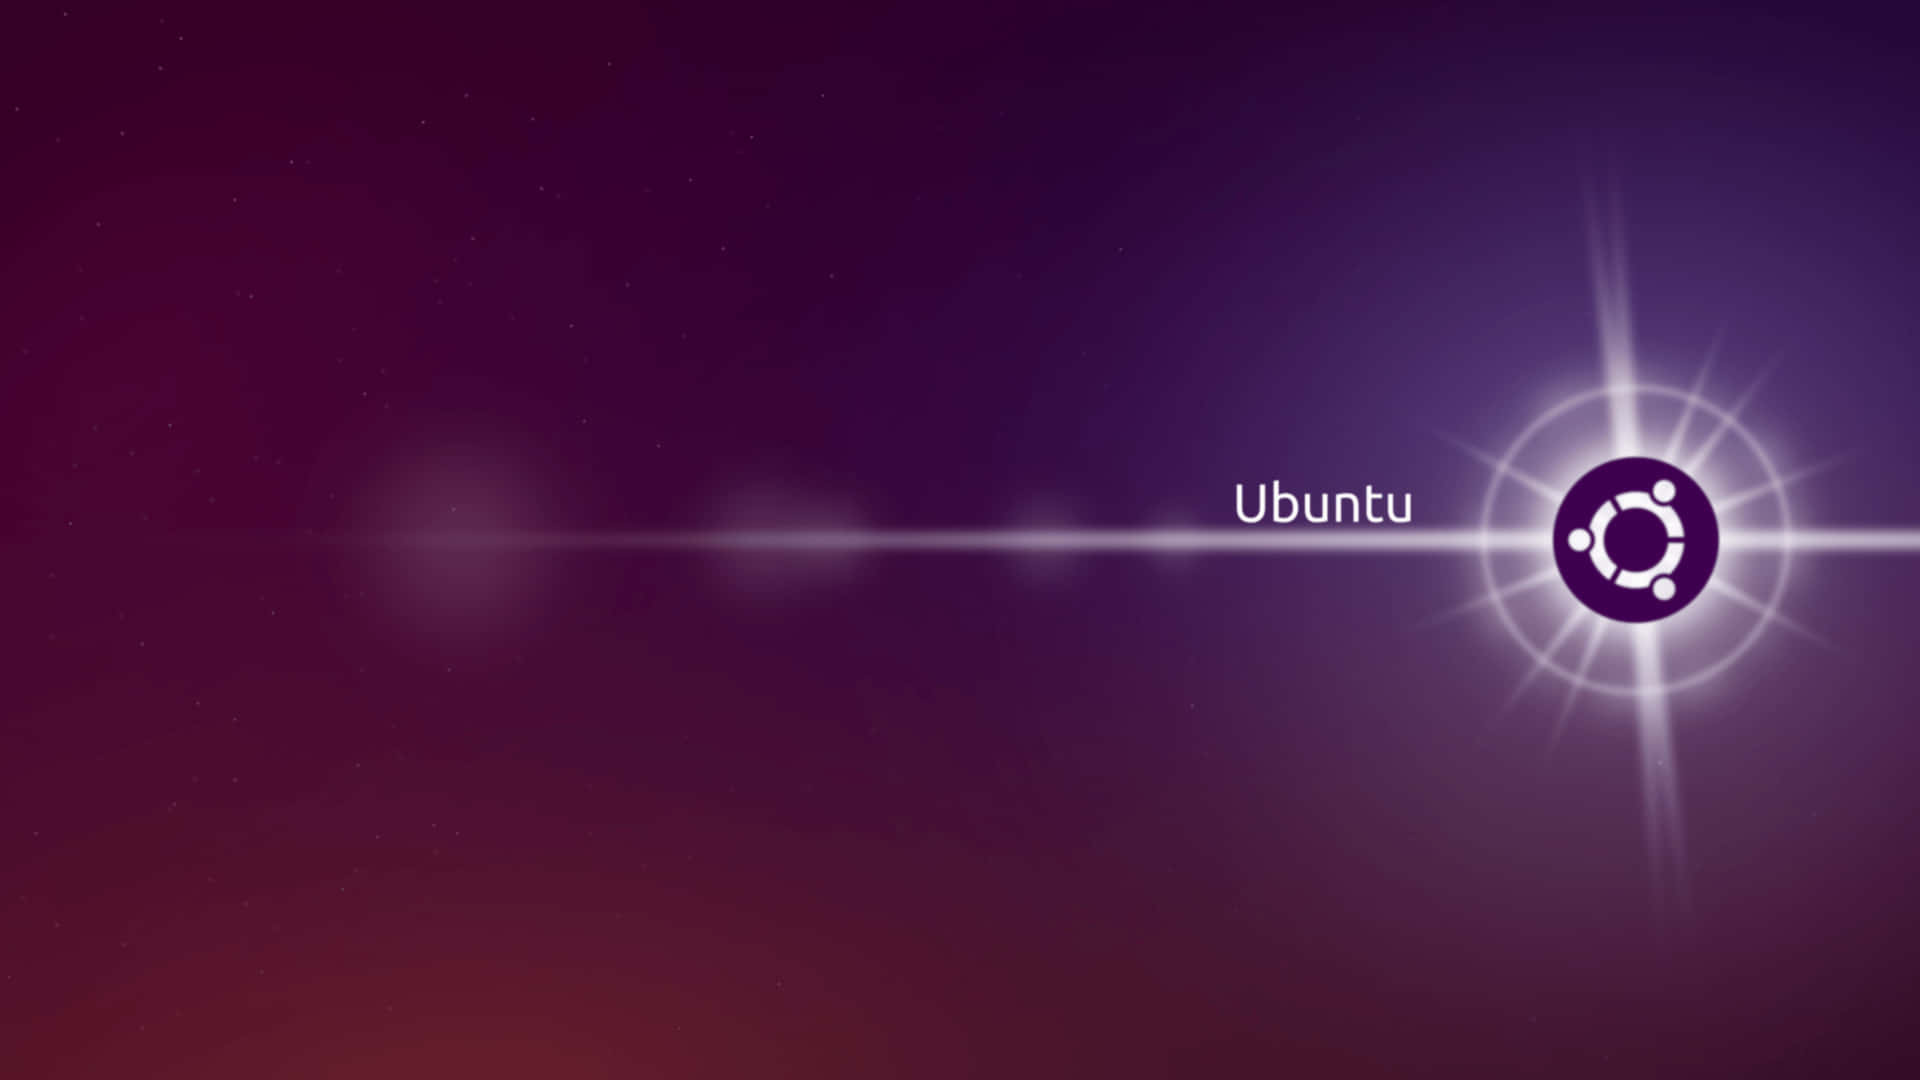 Bạn đam mê với hình nền 4k và yêu thích Ubuntu? Tải ngay hình nền Ubuntu 4k tuyệt đẹp để trang trí chiếc máy tính của bạn. Những hình ảnh sống động và chất lượng vượt trội sẽ khiến bạn phải thích thú.